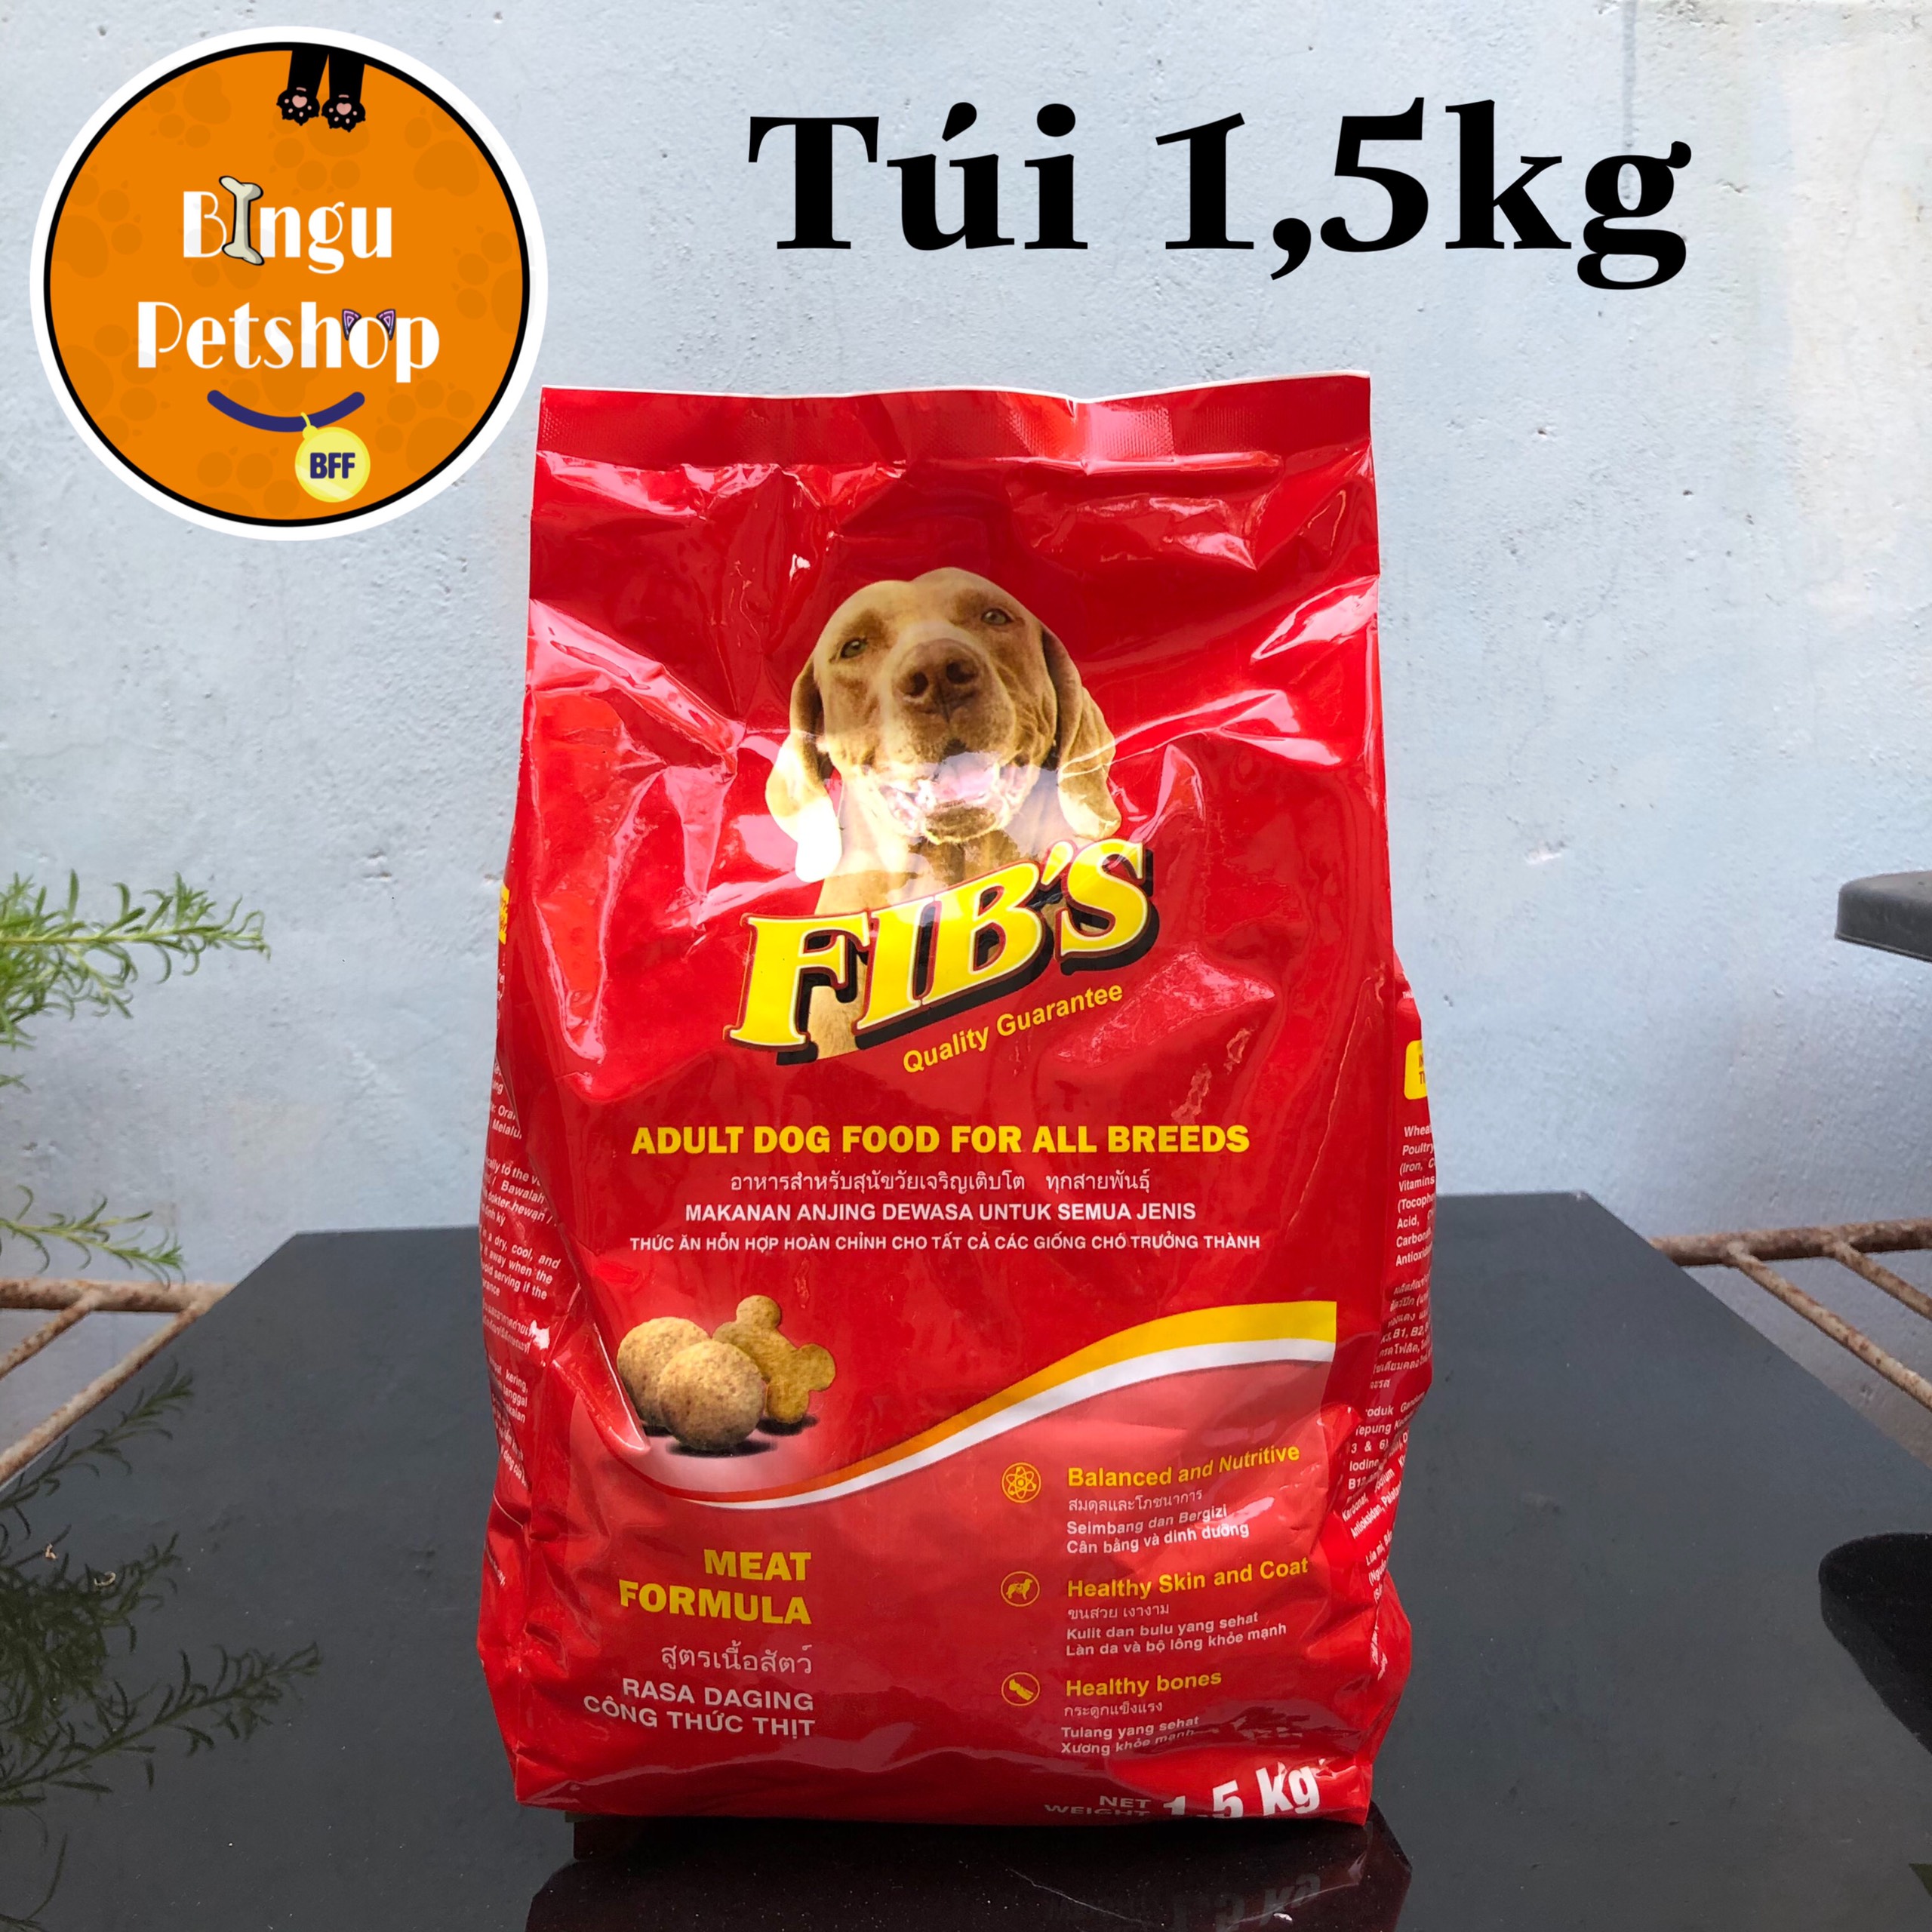 TÚI 1,5KG Thức ăn cho chó trưởng thành Ganador Fib s 1,5 kg Bingu Petshop